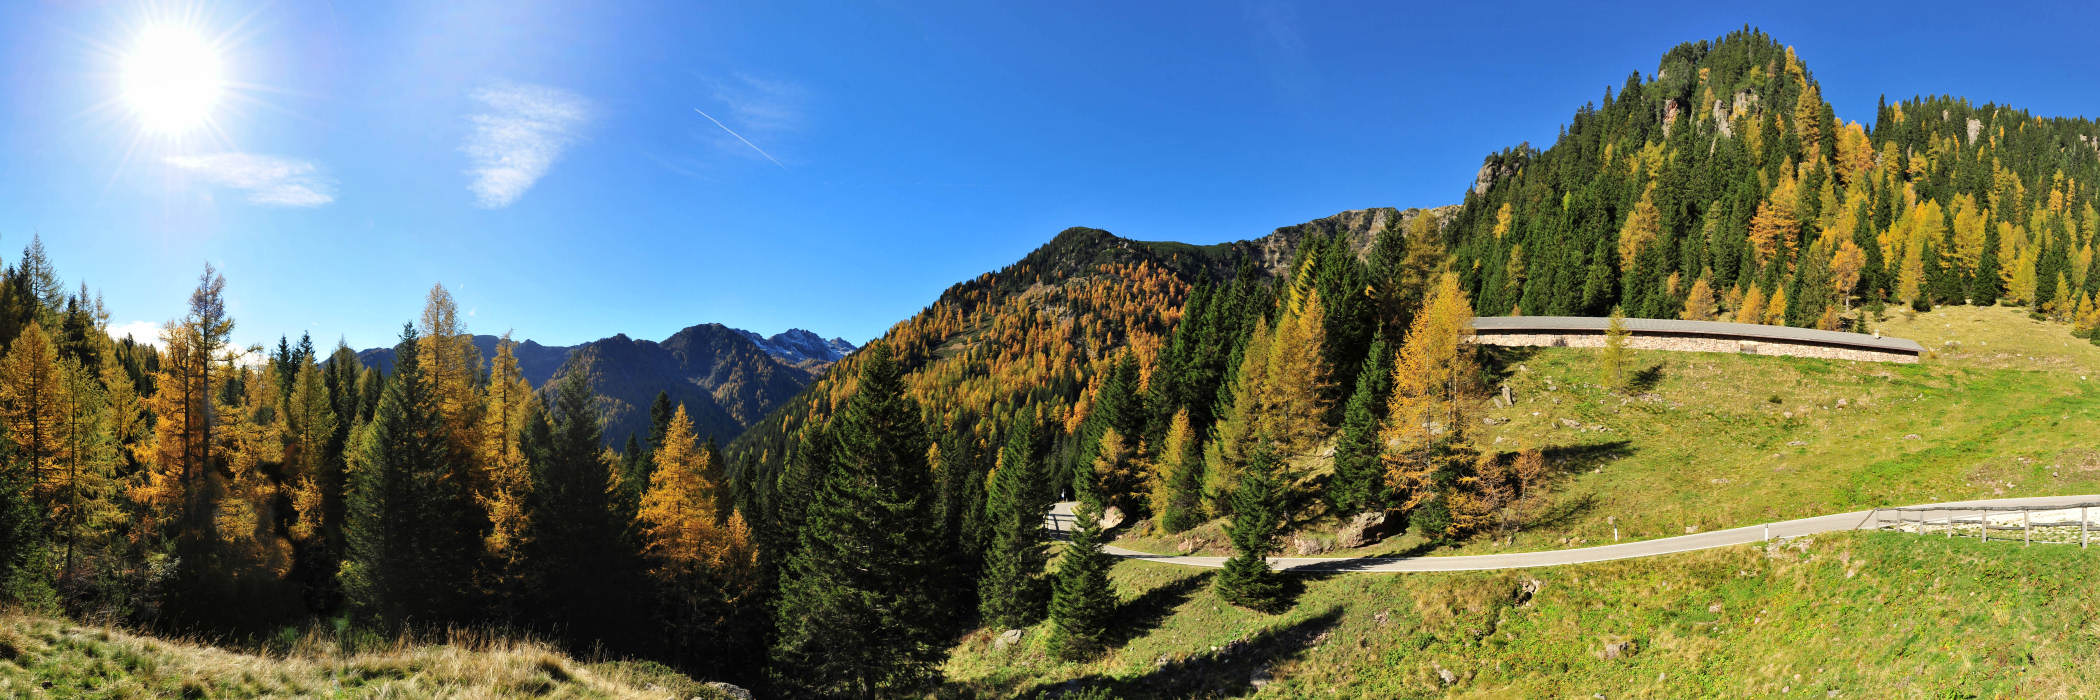 dal passo Manghen verso la Val Calamento, Lagorai, Trentino